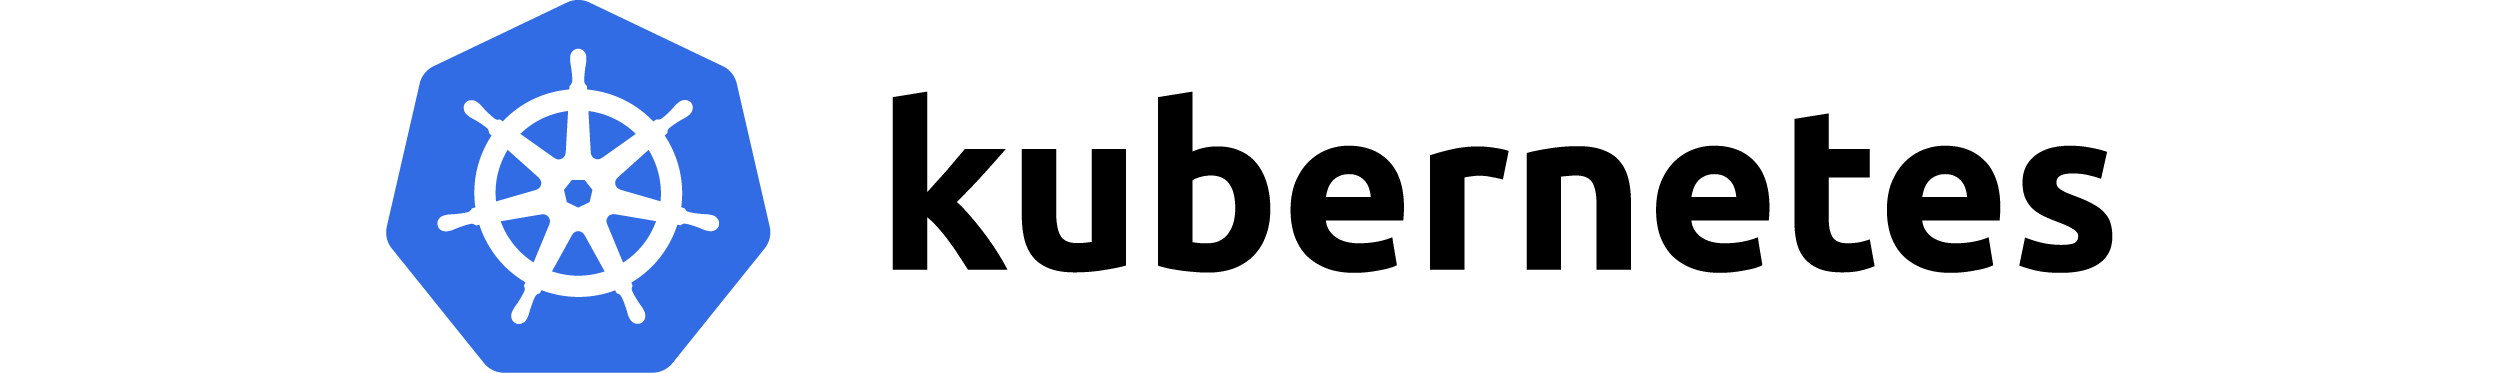 Kubernetes Logo Png, Transpar